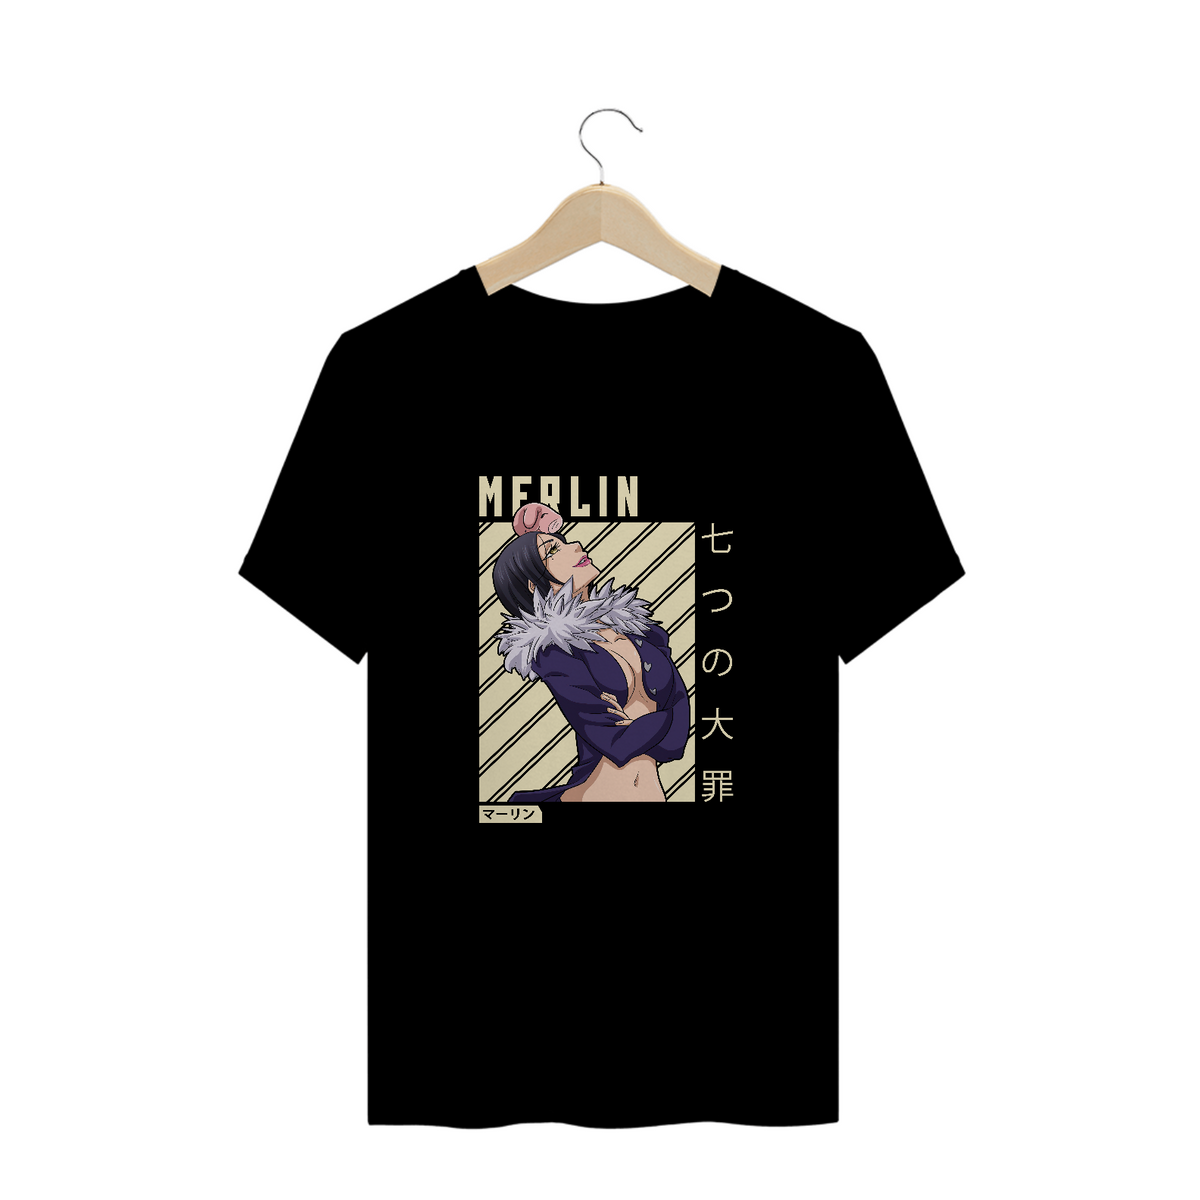 Nome do produto: Camisa Merlin